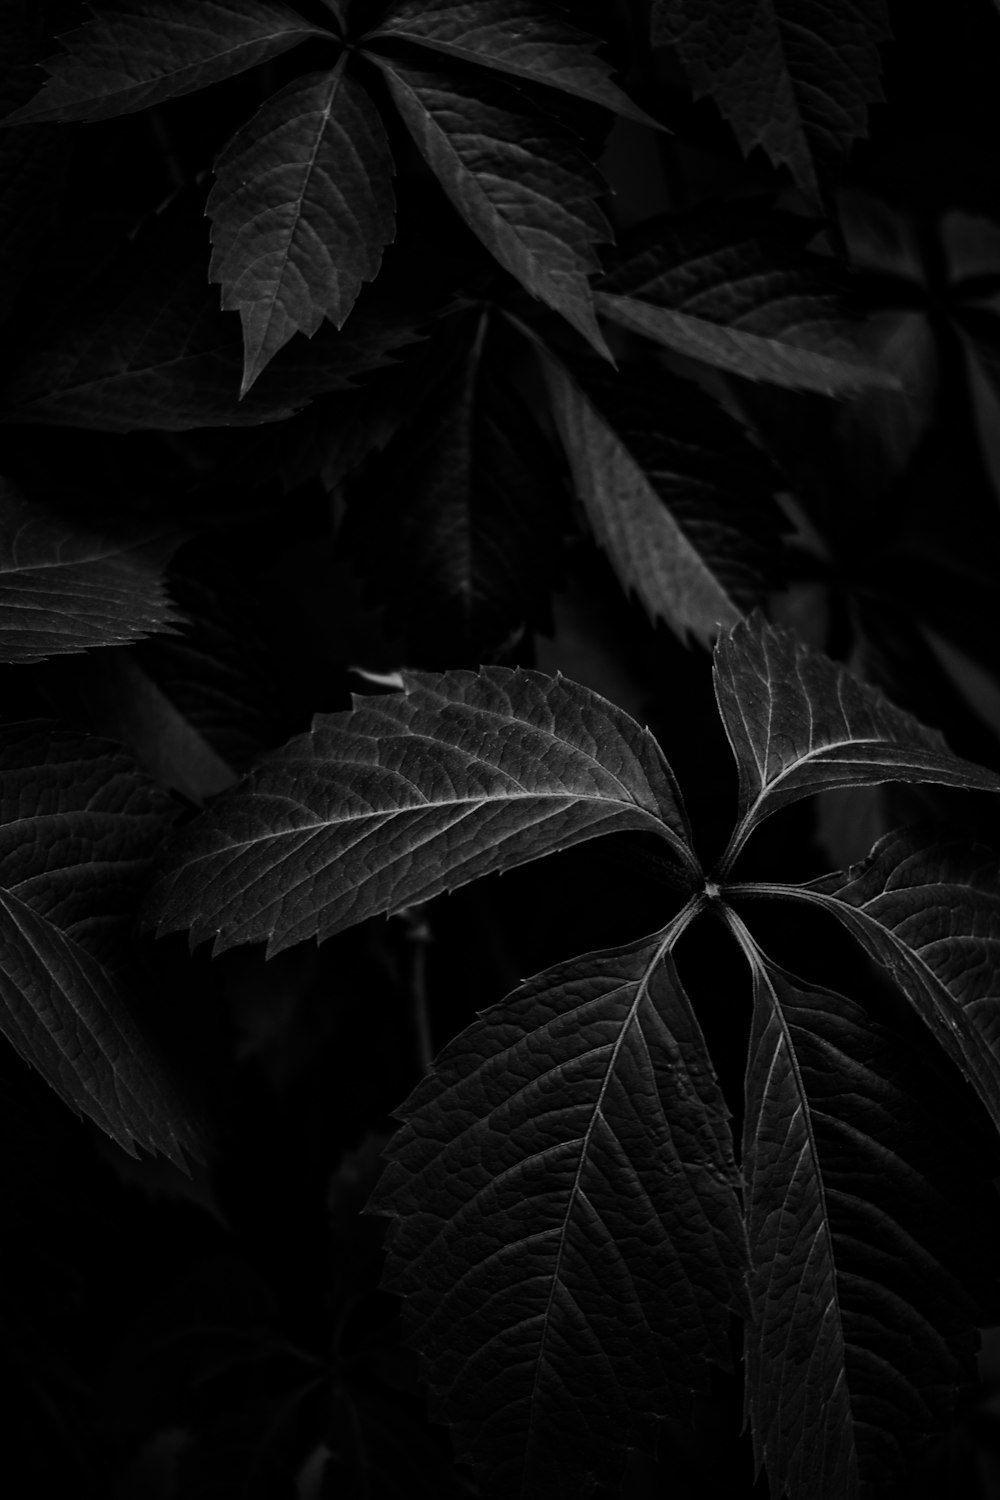 Foto in scala di grigi delle foglie nella stanza buia